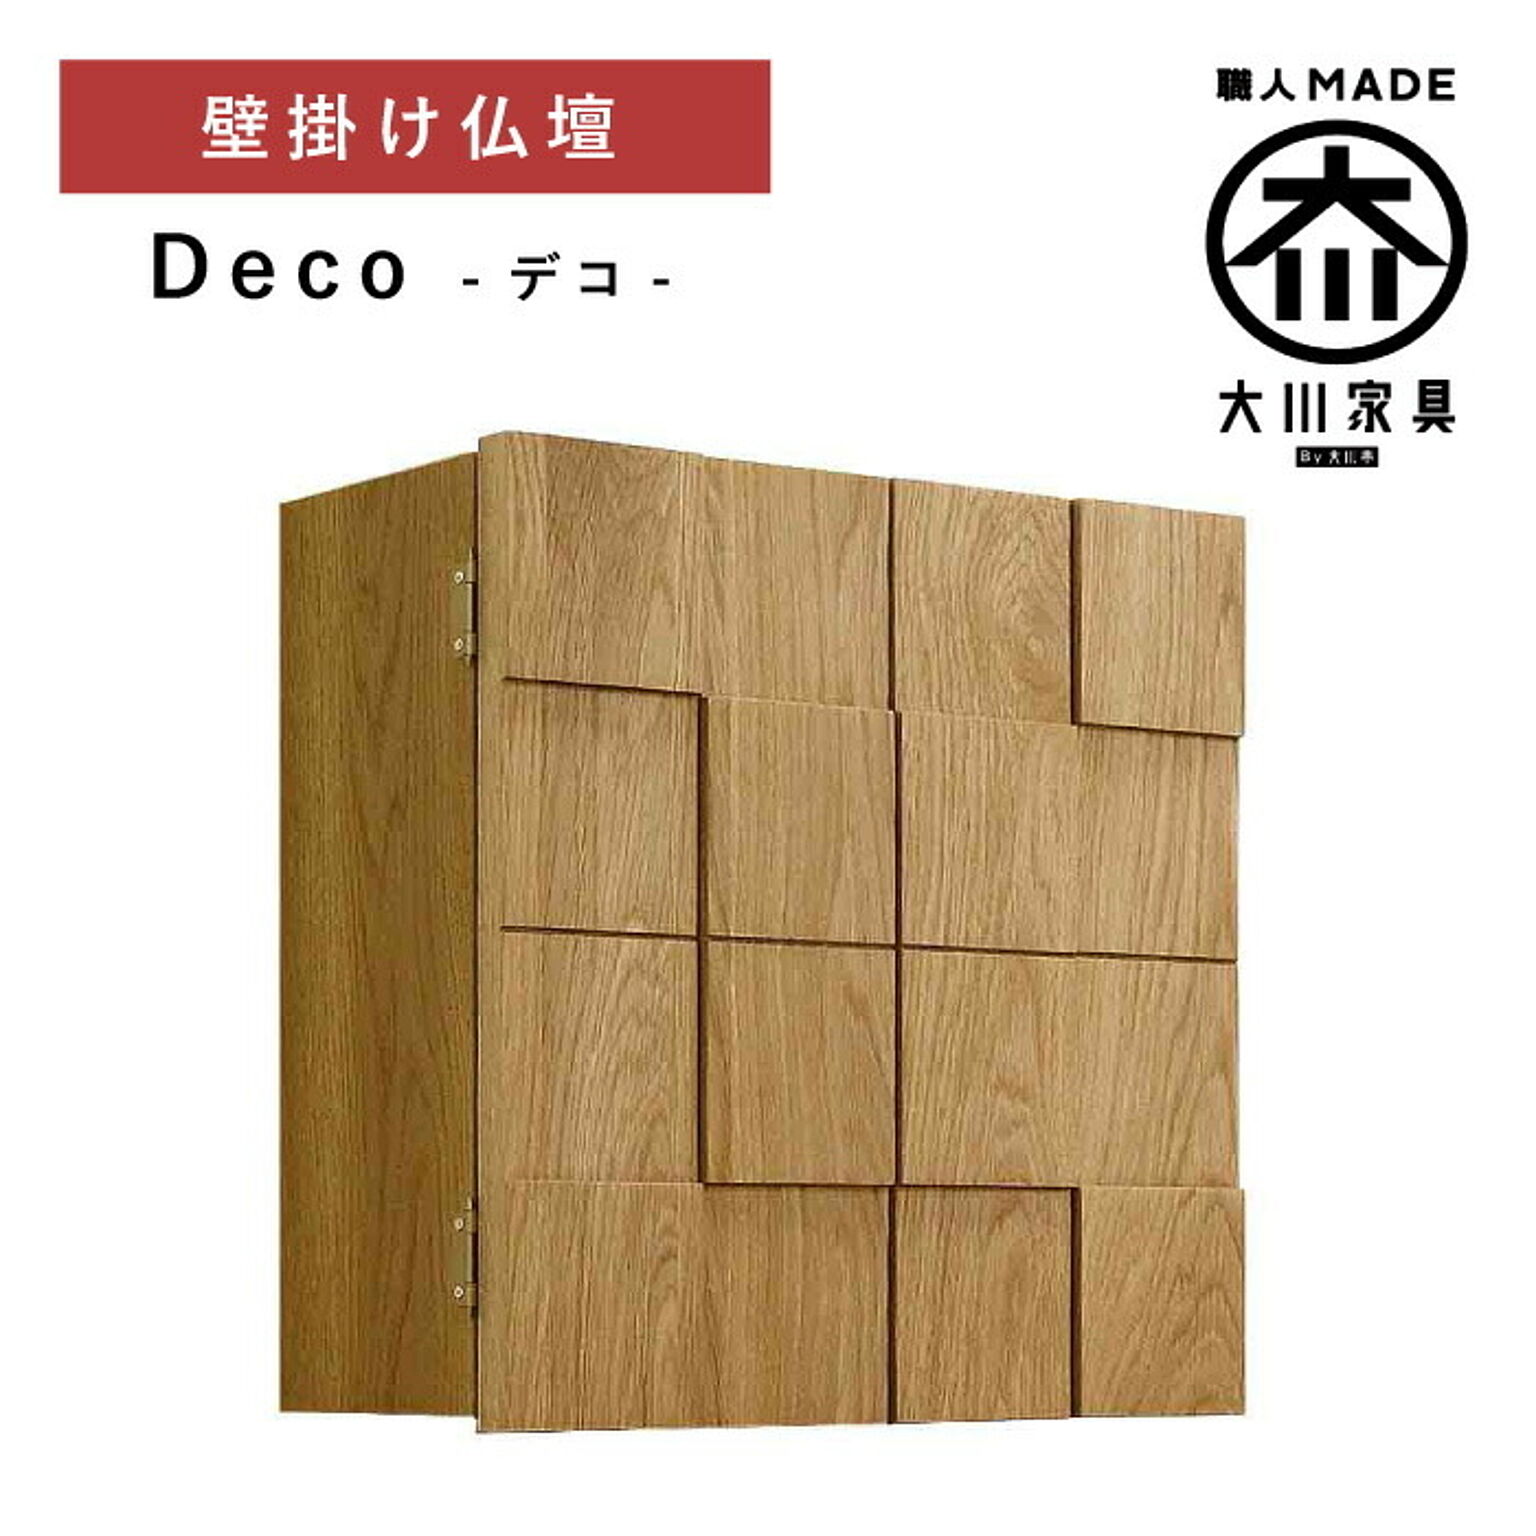 丸田木工 デコ 仏壇 壁掛け仏壇 完成品 日本製 大川家具